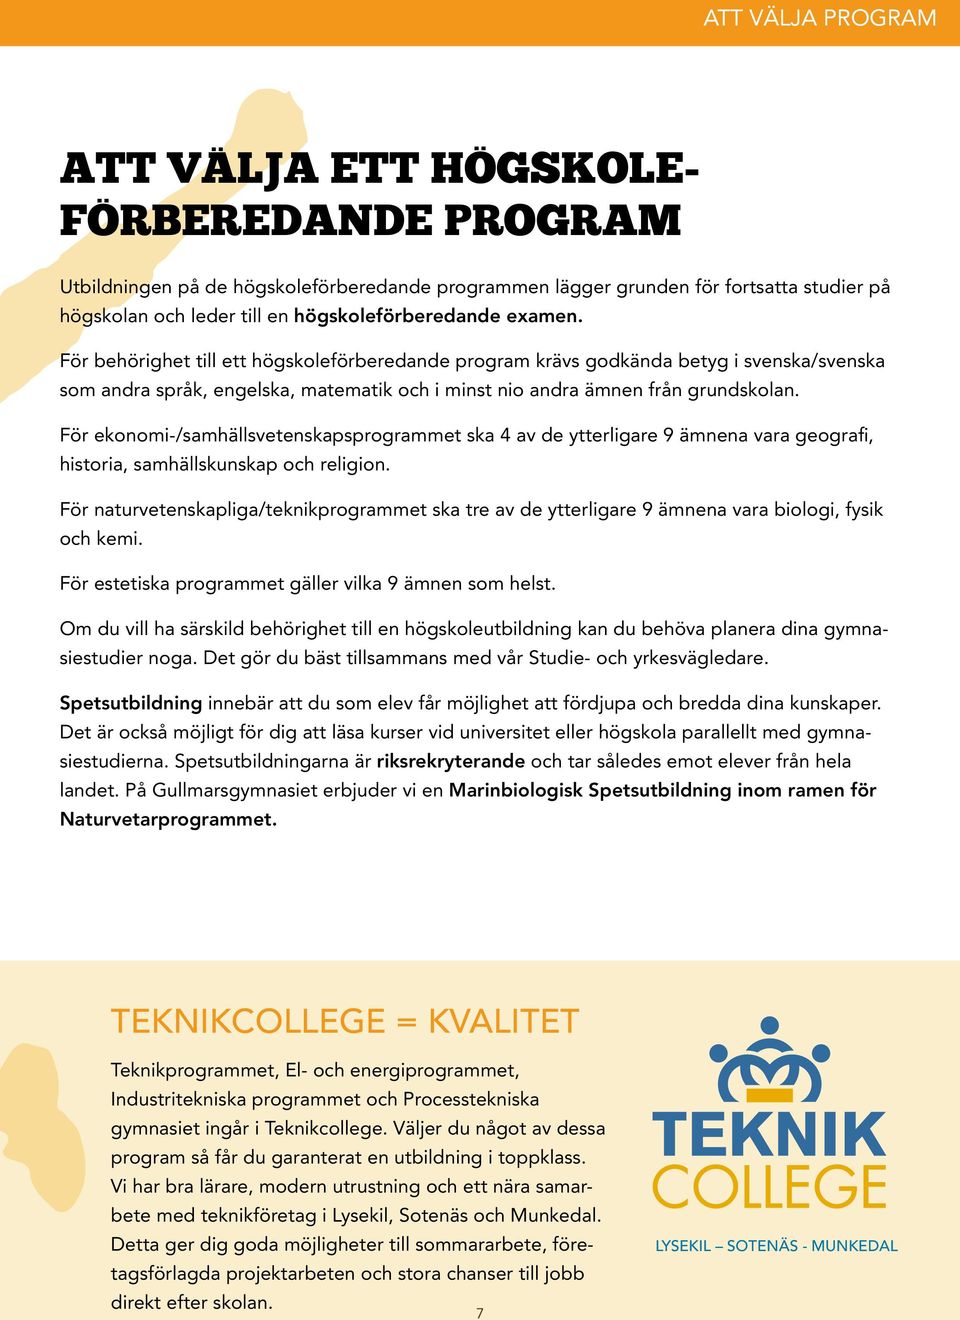 För behörighet till ett högskoleförberedande program krävs godkända betyg i svenska/svenska som andra språk, engelska, matematik och i minst nio andra ämnen från grundskolan.